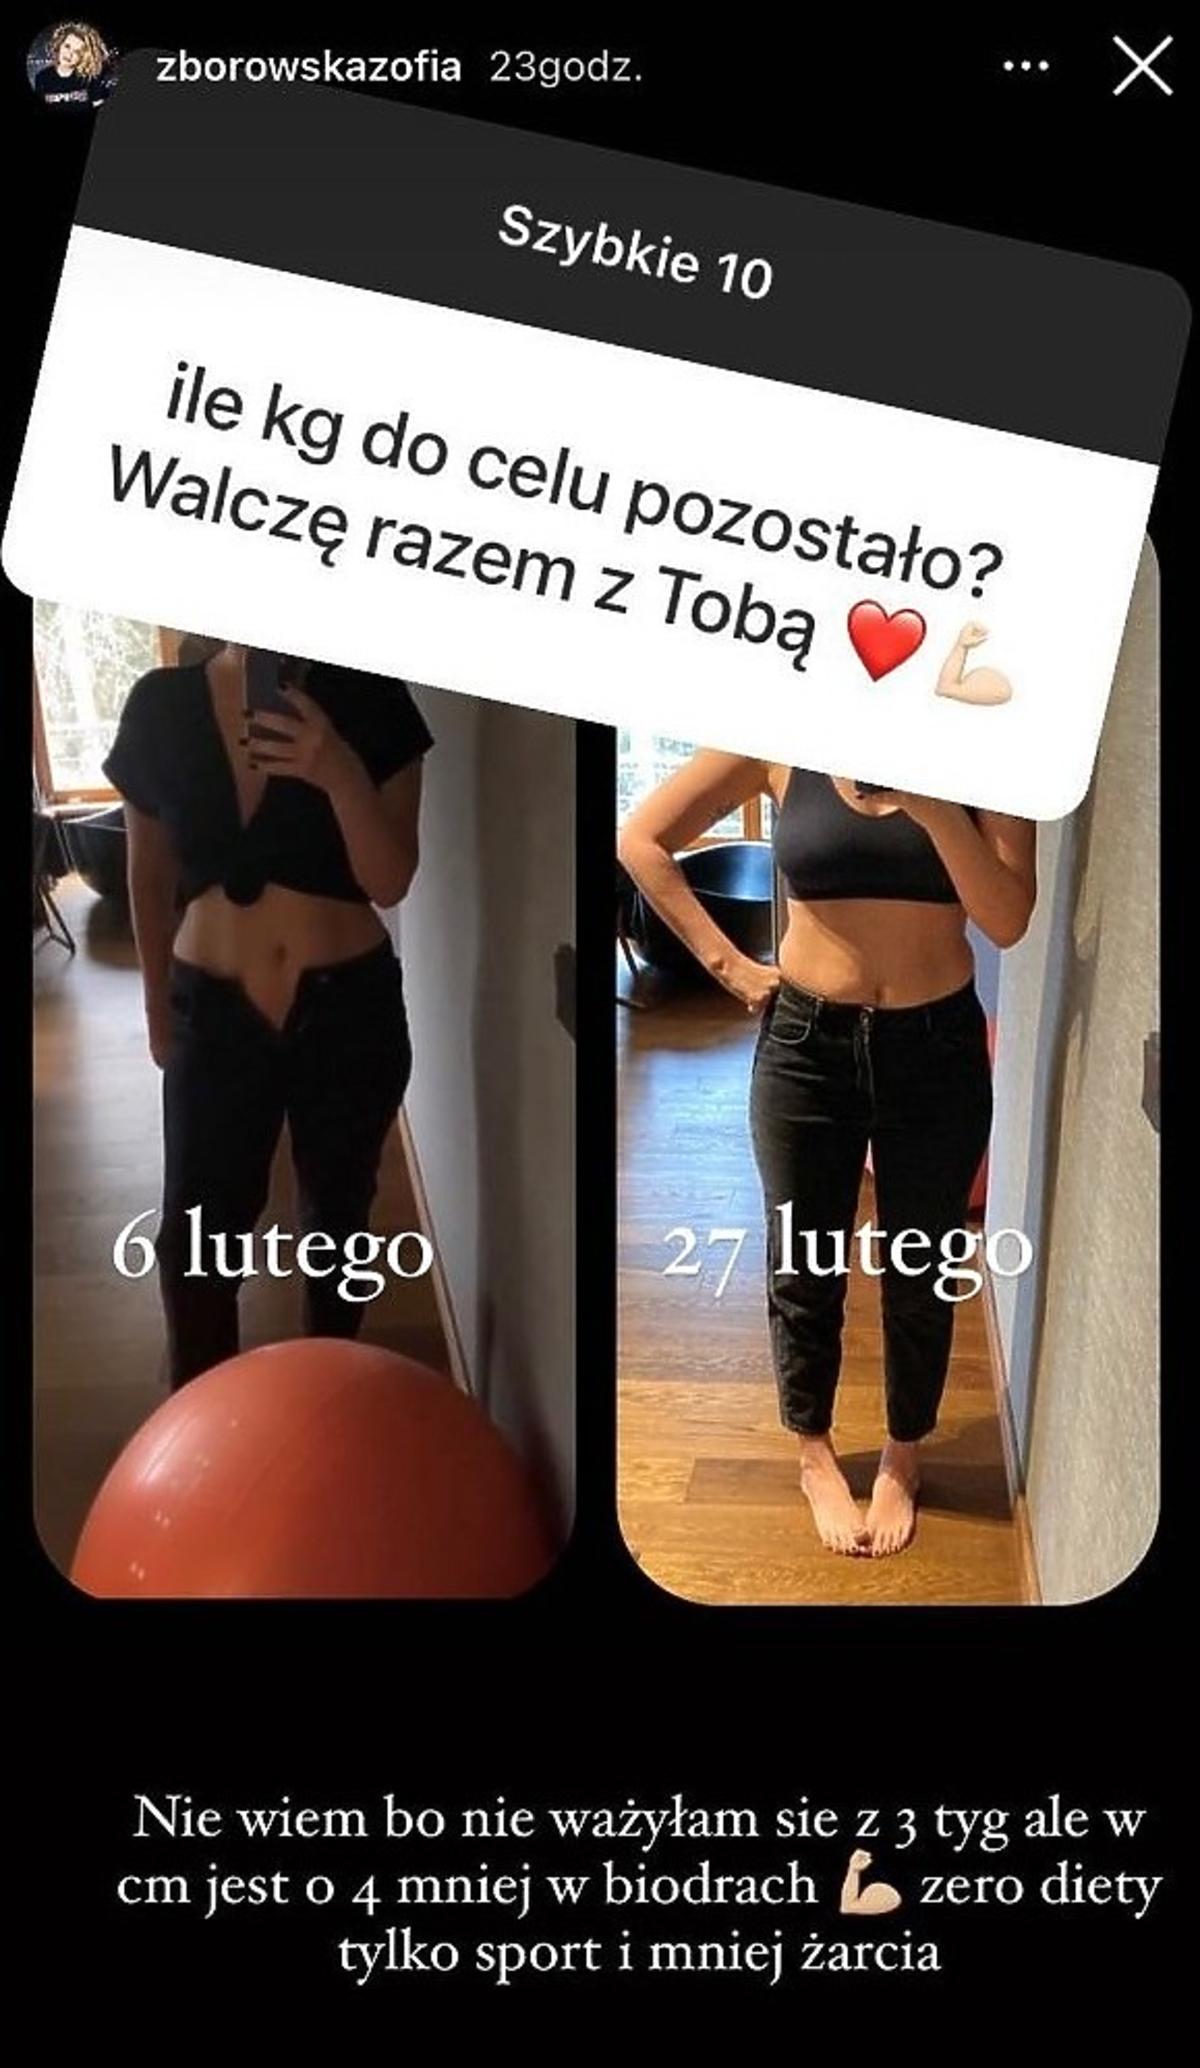 Zosia Zborowska pokazała zdjęcia „przed” i „po”. Jak schudła? „Zero diety” - przyznaje